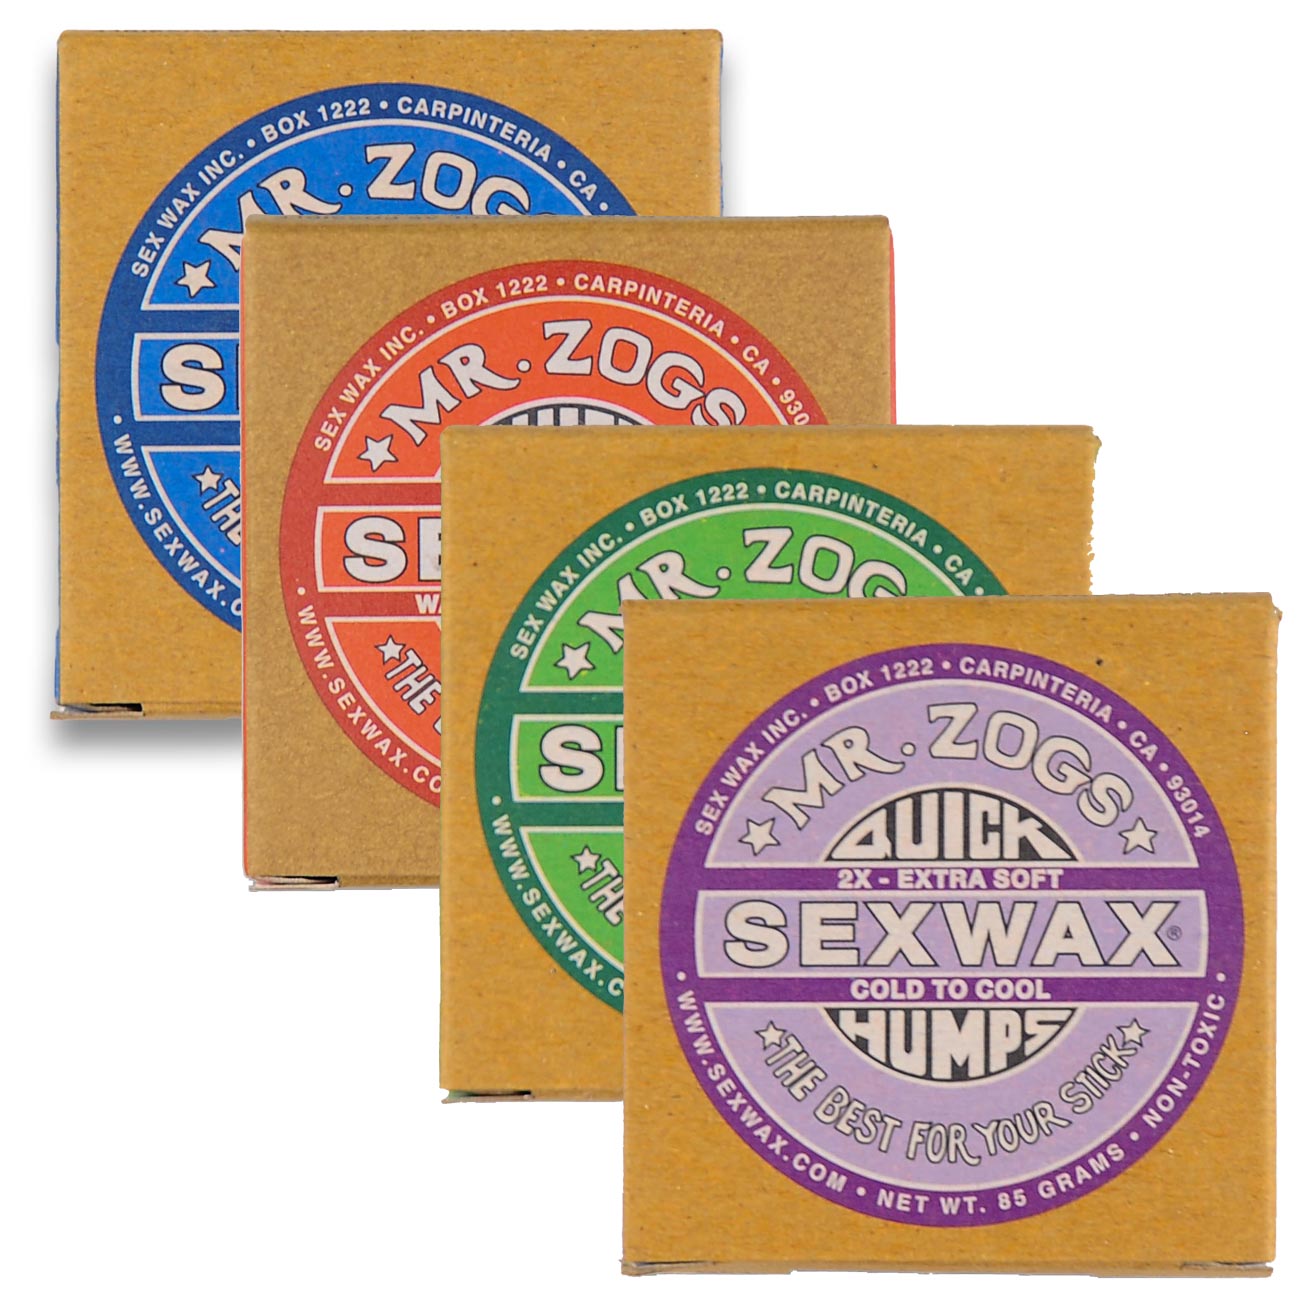 Mr. Zog's Sex Wax - Quick Humps (All Temperatures) - 2 Pack